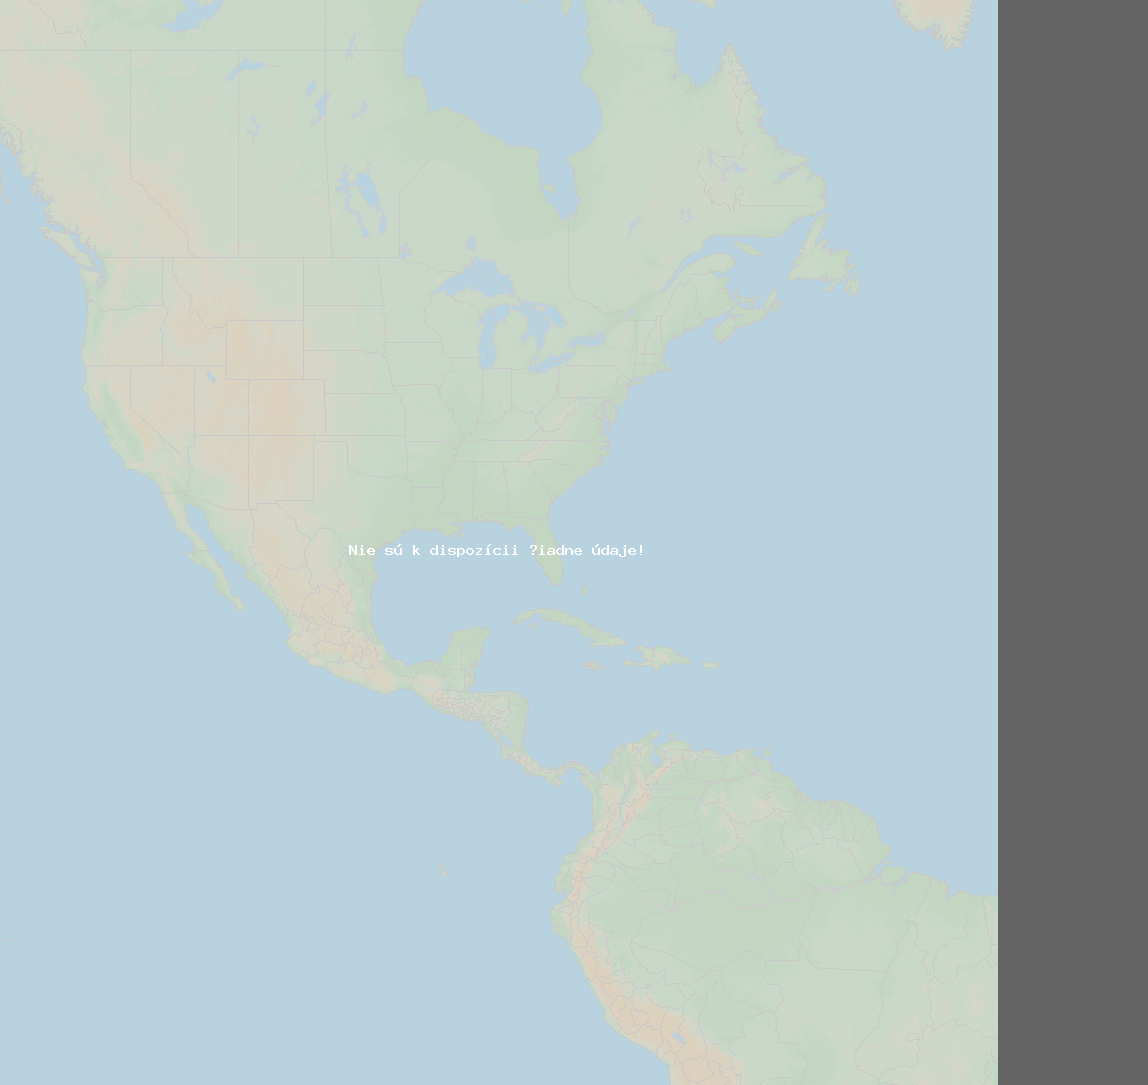 Pomer bleskov (Stanica Boynton Beach) North America 2024 